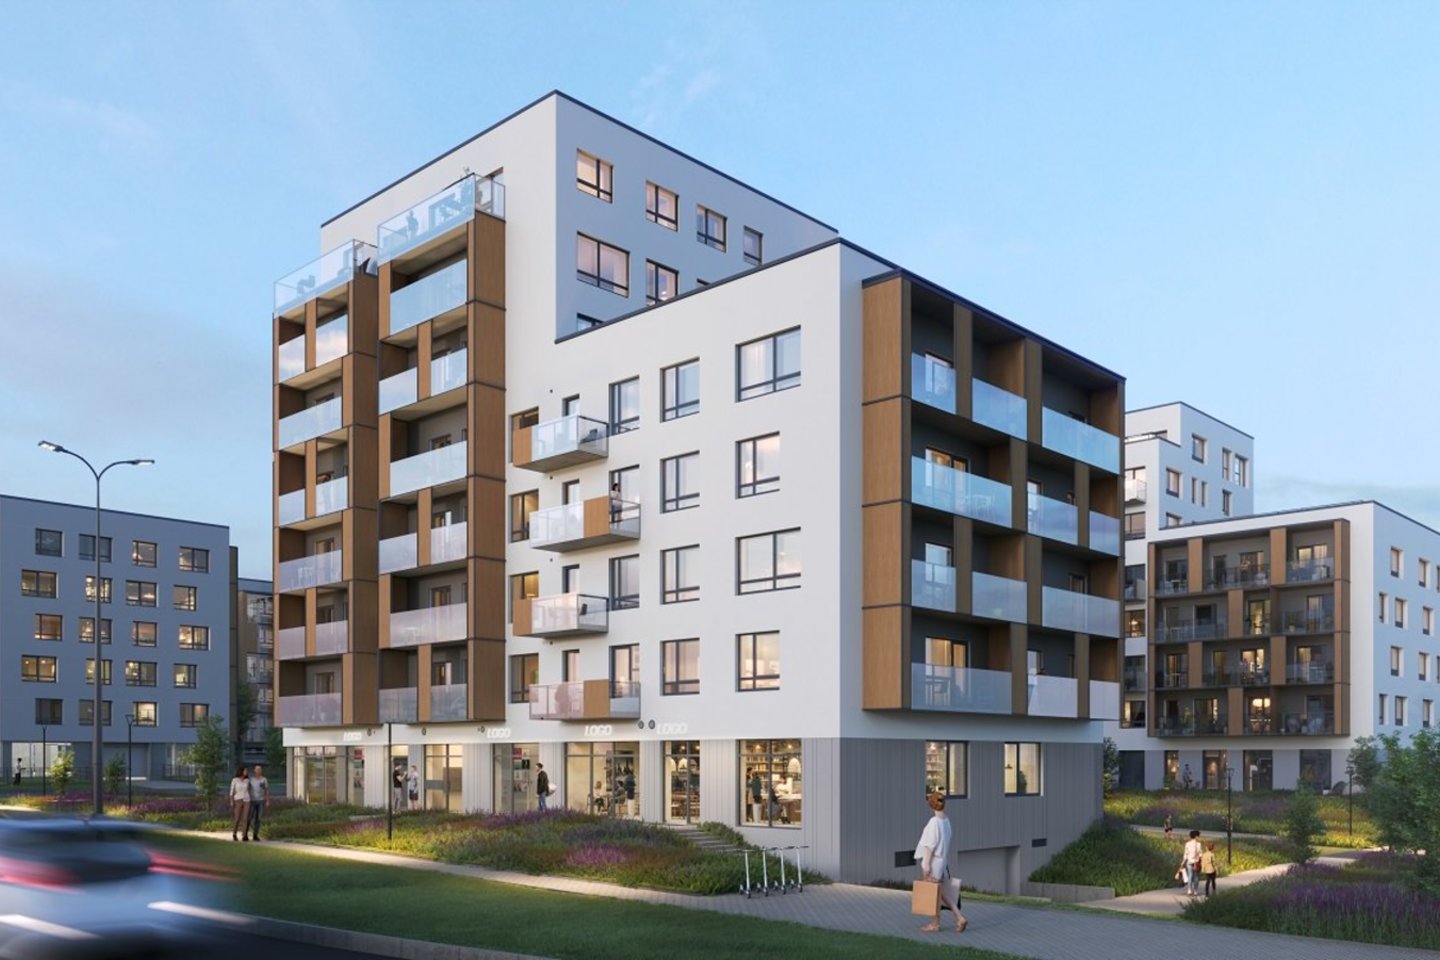 Sparčiai augančioje Pilaitėje jau užbaigtas antrasis „Martyno namų“ projekto etapas bei pradėti trečiojo etapo butų pardavimai.